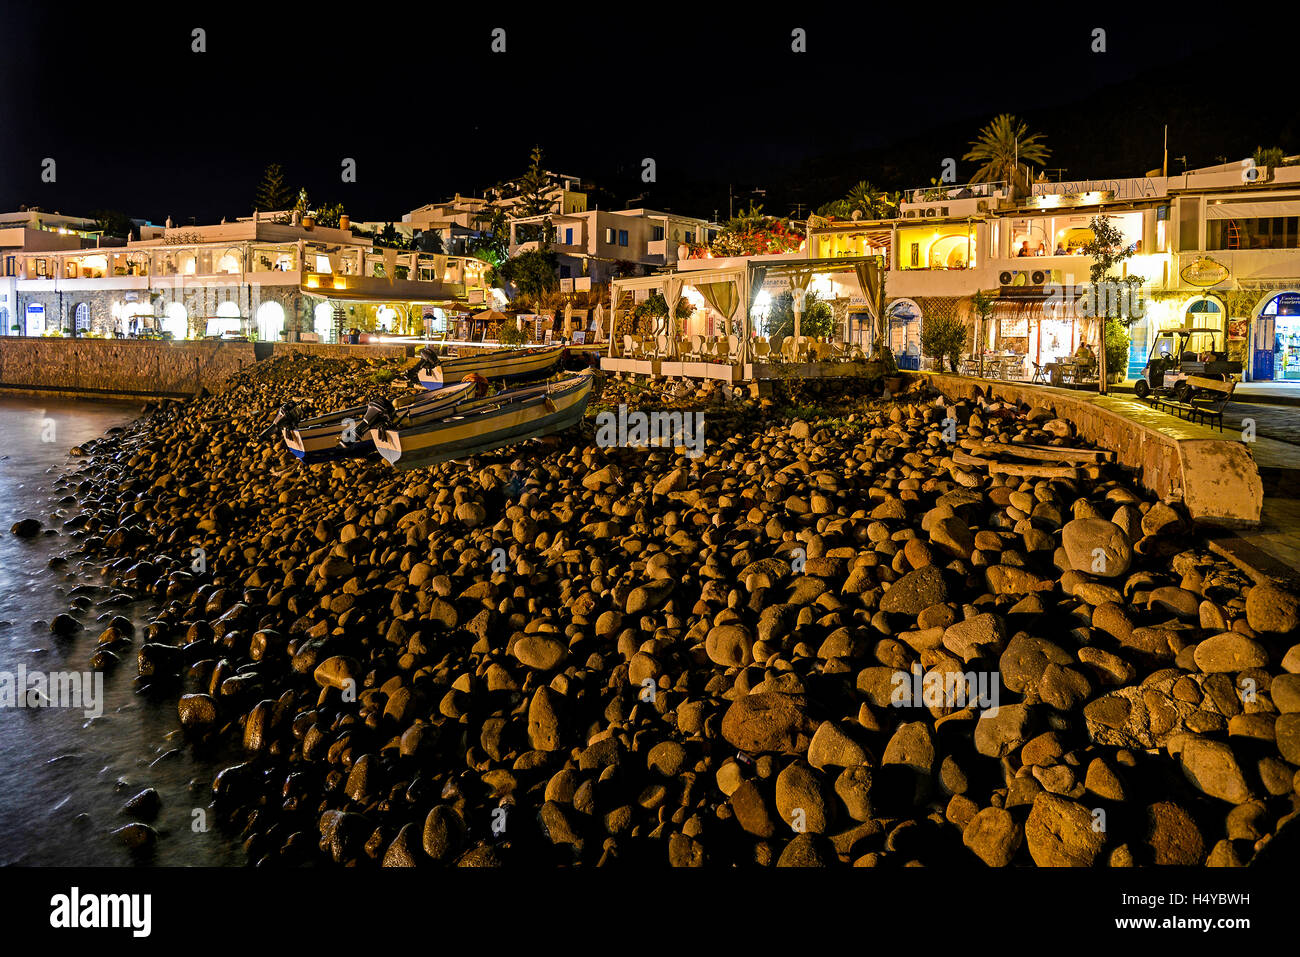 Italie Sicile Iles Eoliennes Panarea Vue de nuit sur le port de San Pietro Banque D'Images